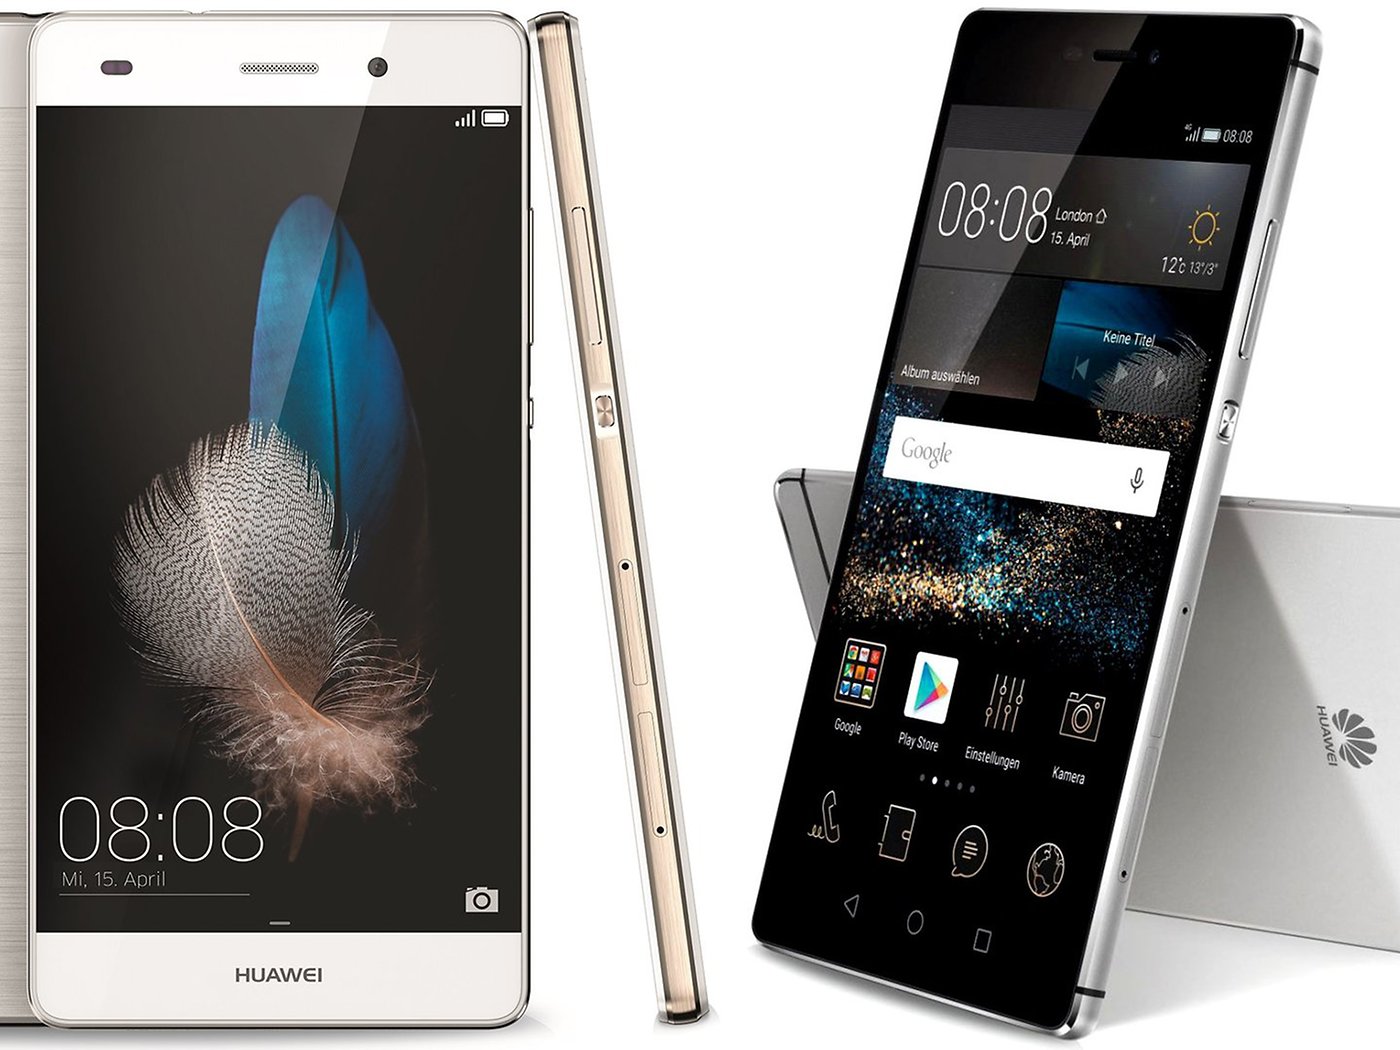 Molestar resistirse flor Comparación Huawei P8 vs Huawei P8 Lite - Hermanos y rivales | NextPit